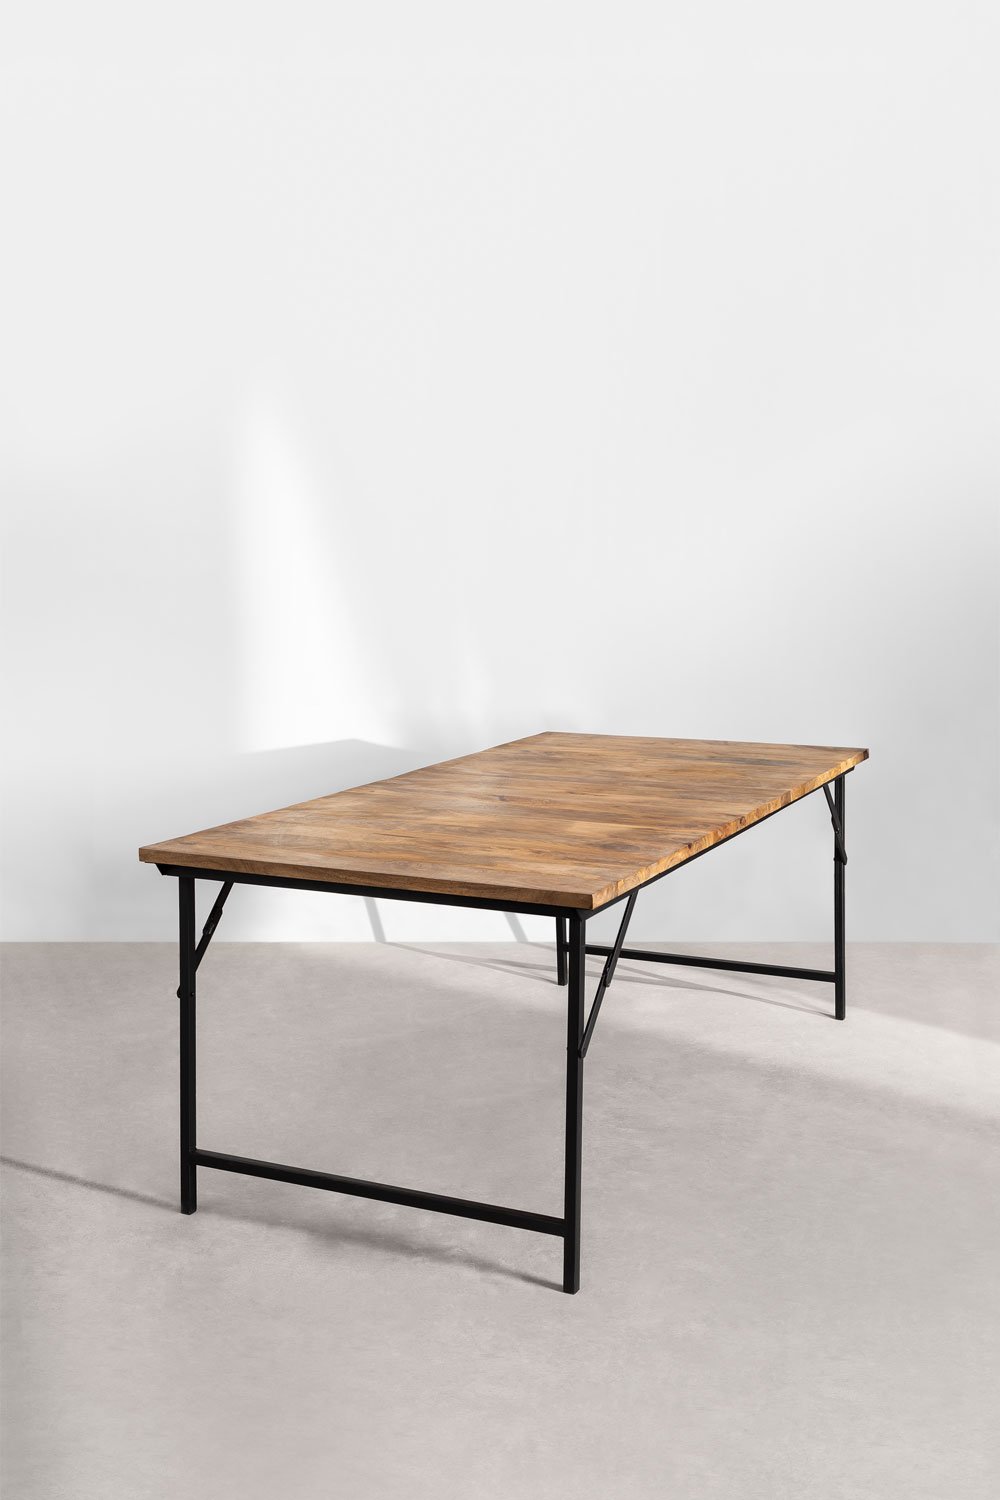 Prostokątny składany stół jadalny z drewna mango i metalu (200x100 cm) Fer, obrazek w galerii 2